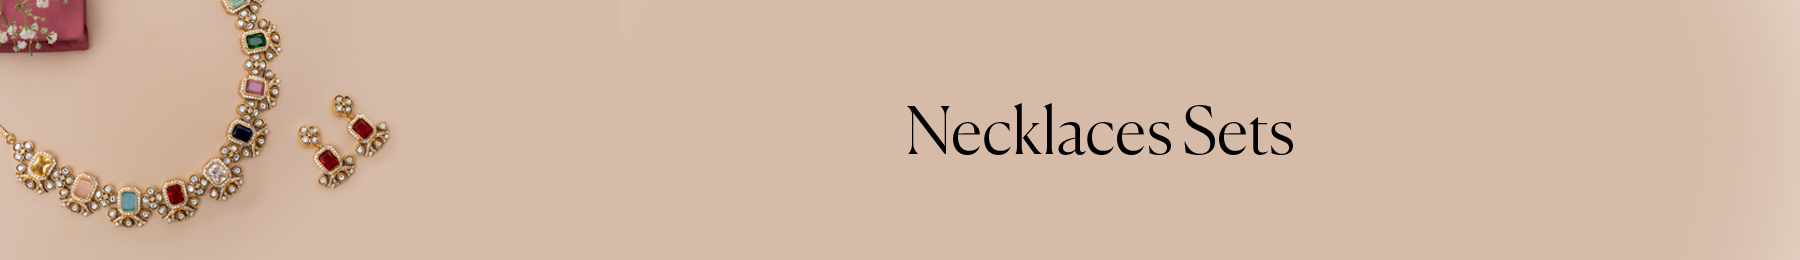 Necklaces Sets